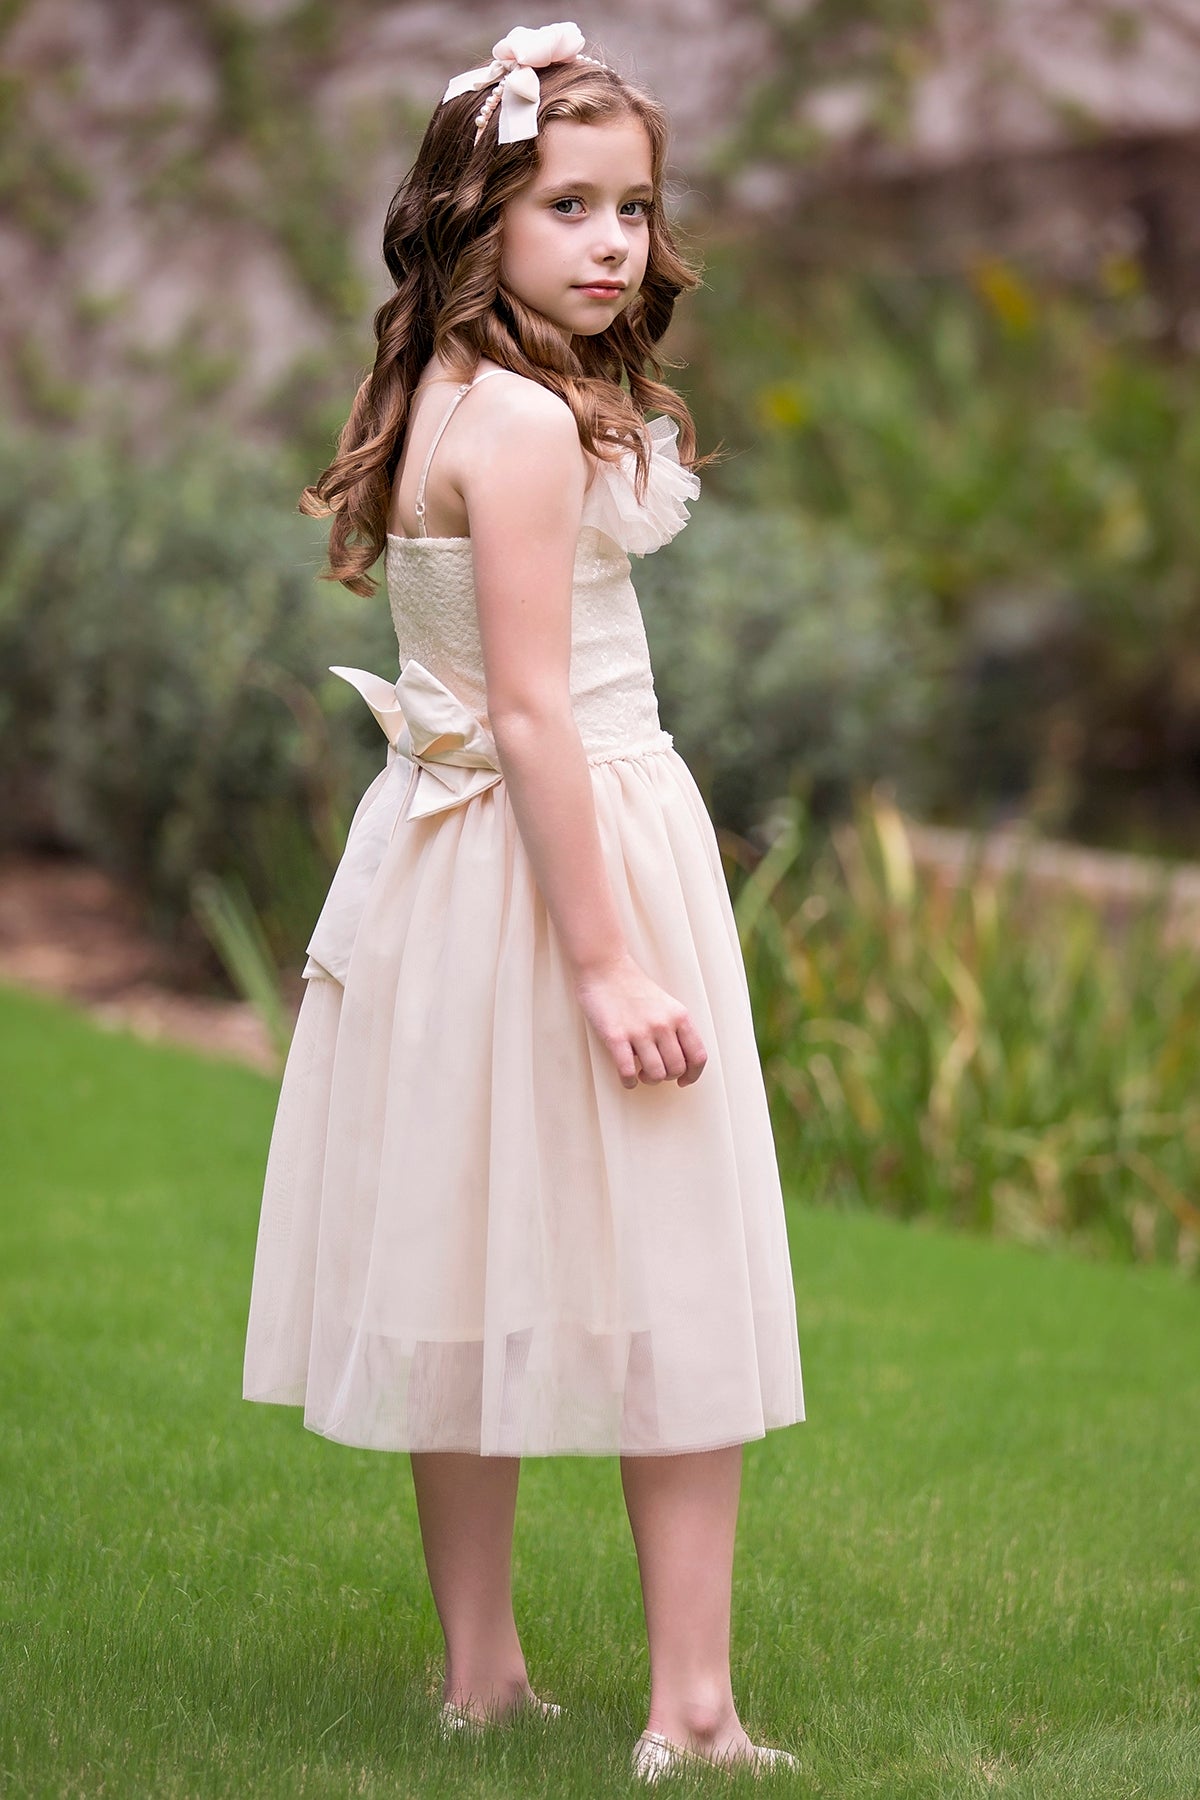 Giselle Dress - Cream